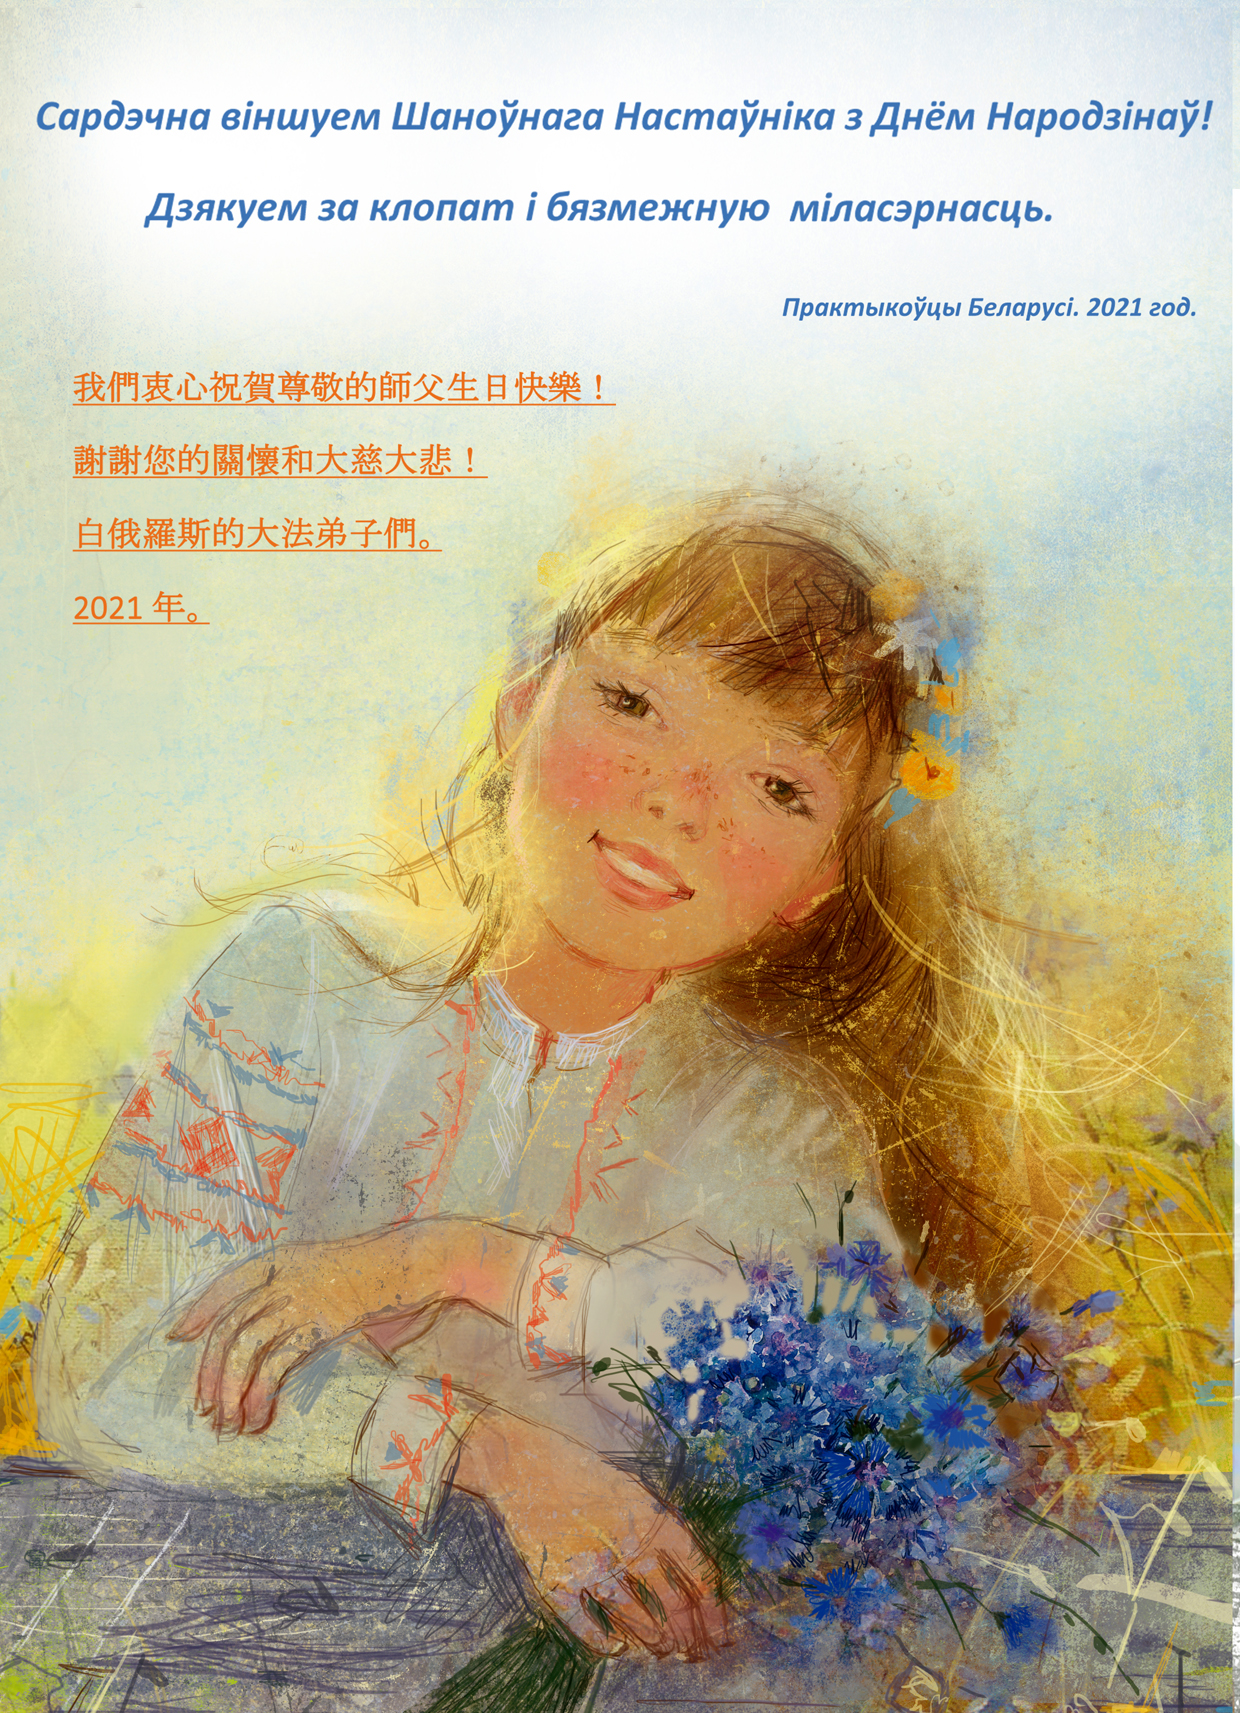 Congratulations to Falun Dafa Teacher Li Hongzhi from Belarus